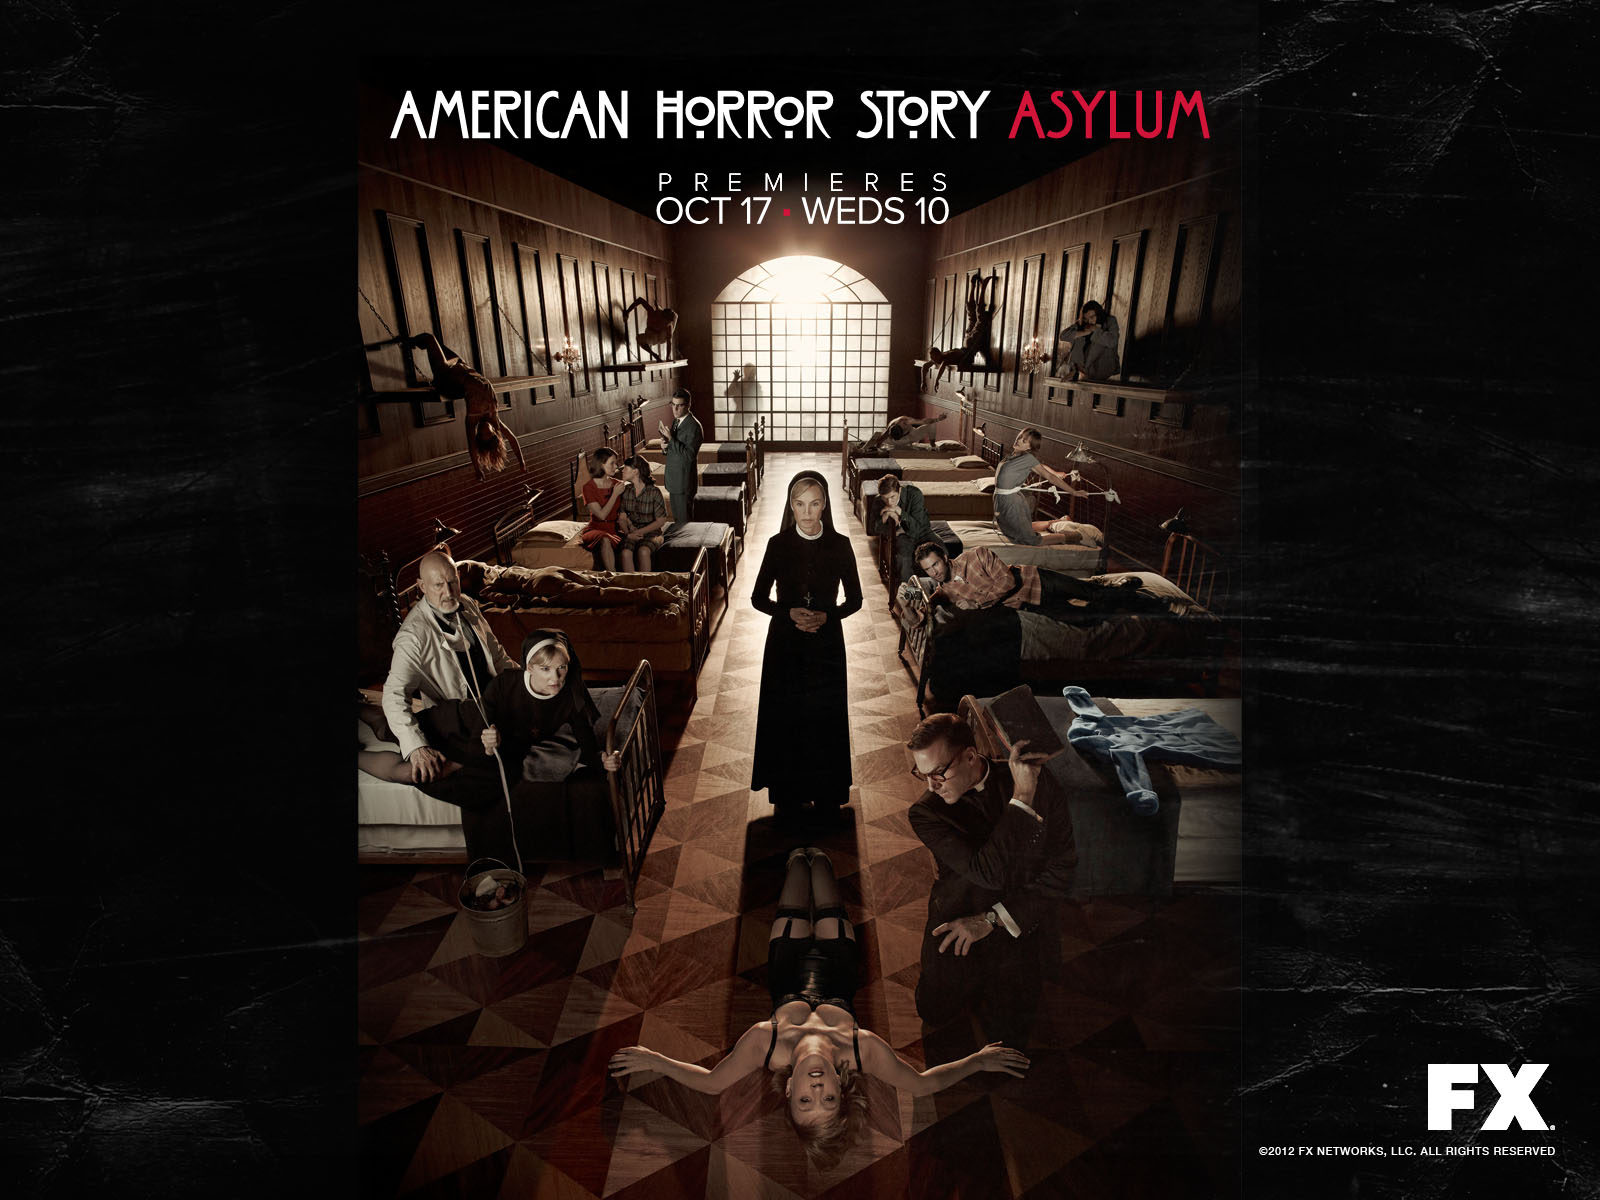 http://1.bp.blogspot.com/-2ao9Nhu8uRk/URZxuM5NL8I/AAAAAAAAJ9U/2S3Hkb7pU3A/s1600/American-Horror-Story-Asylum-wallpapers-3.jpg